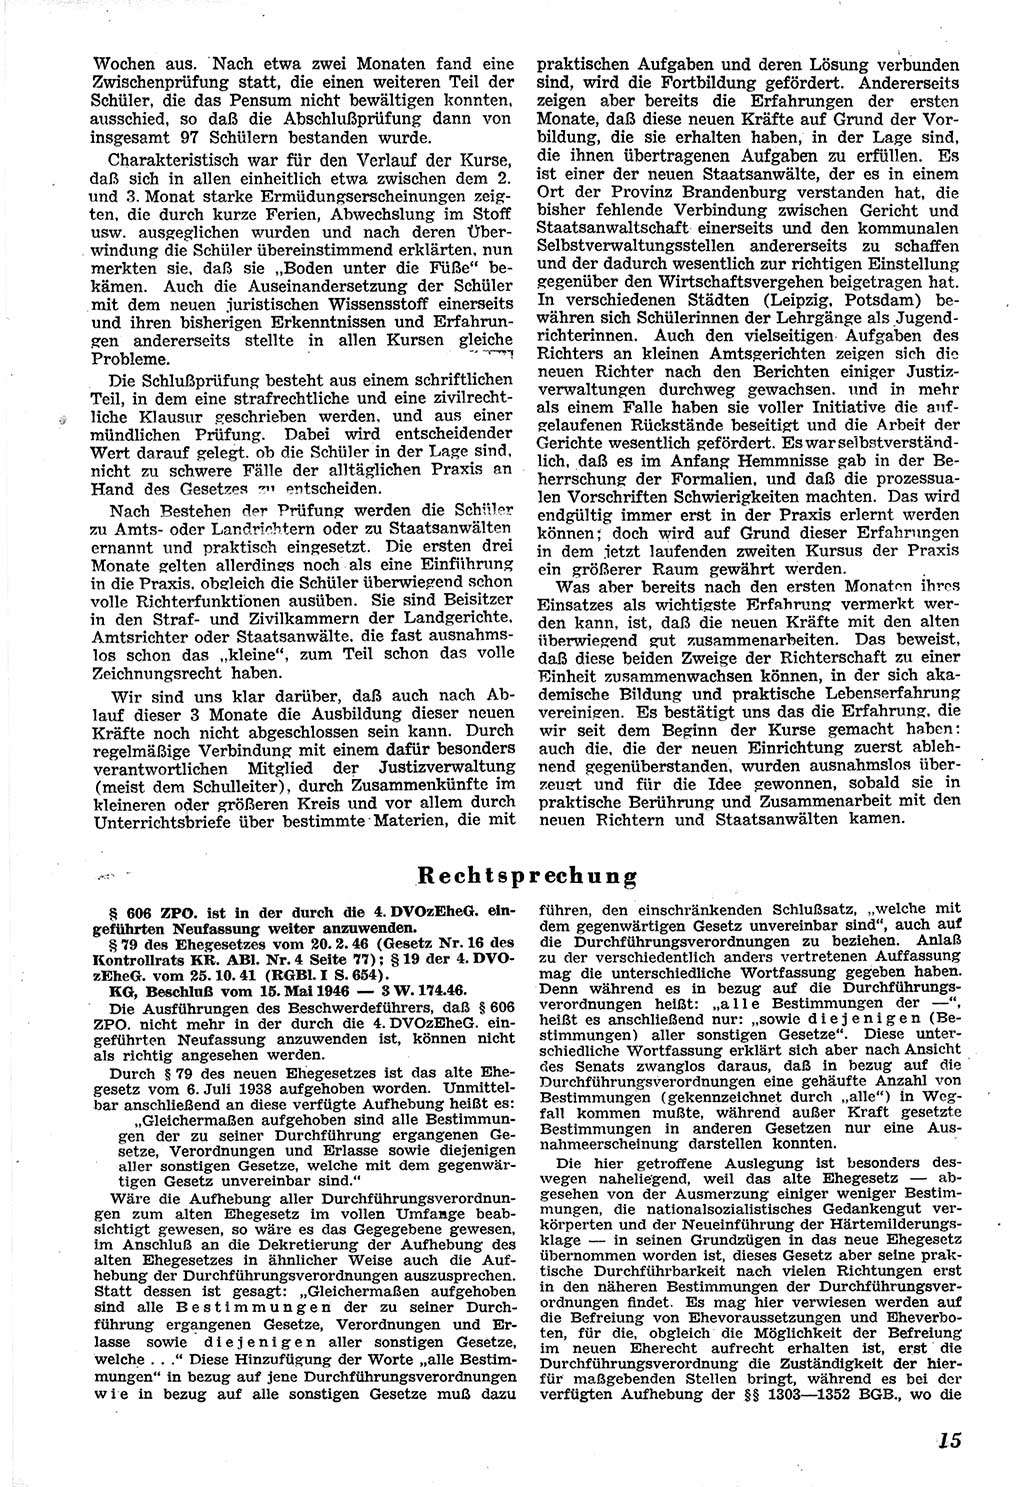 Neue Justiz (NJ), Zeitschrift für Recht und Rechtswissenschaft [Sowjetische Besatzungszone (SBZ) Deutschland], 1. Jahrgang 1947, Seite 15 (NJ SBZ Dtl. 1947, S. 15)